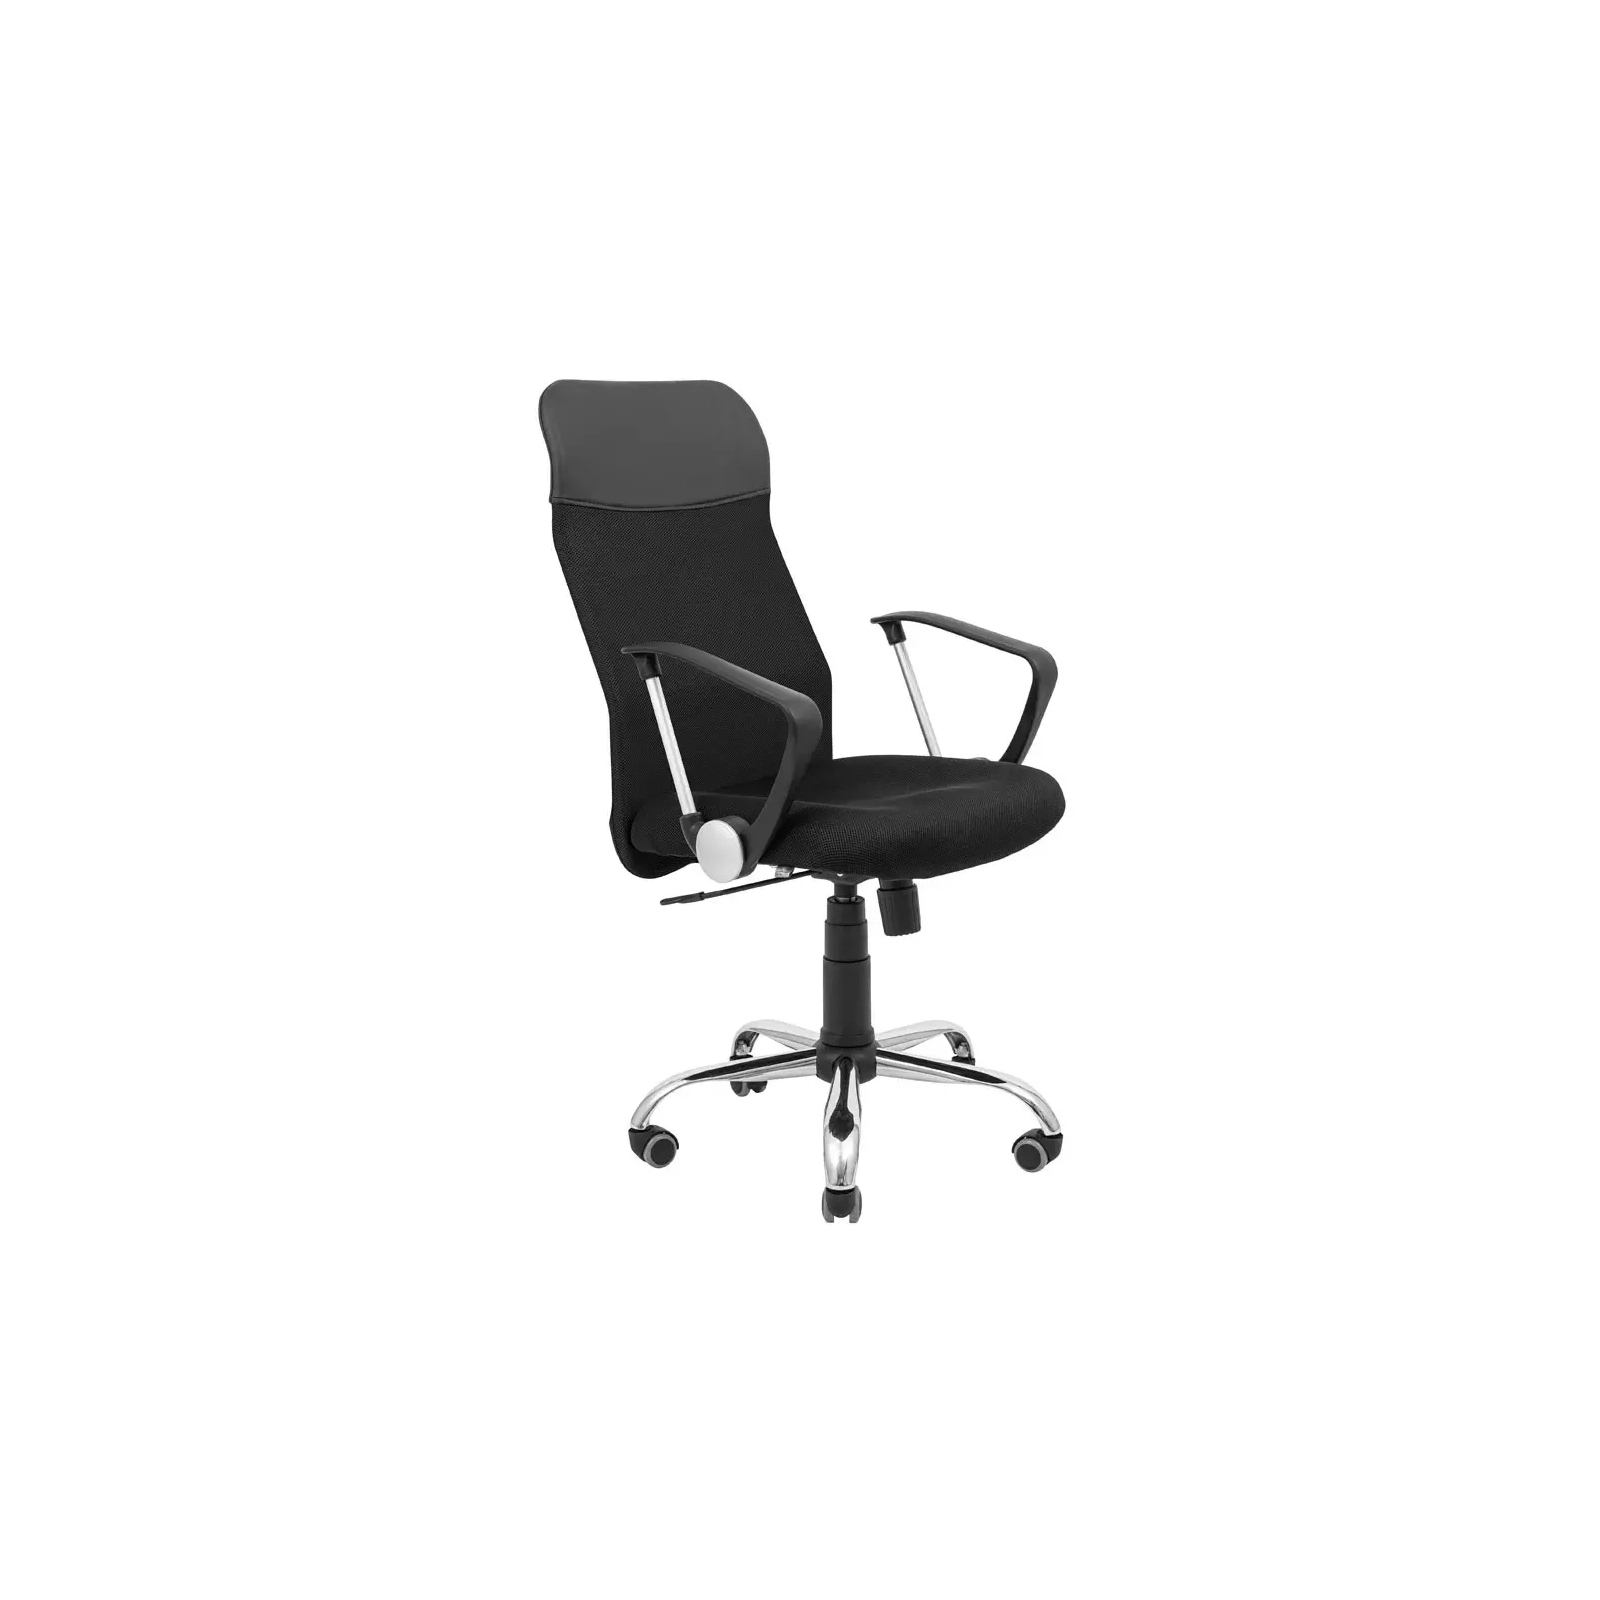 Офисное кресло Richman Ультра Ю Хром M-1 (Tilt) Сетка черная + серая (ADD0003102)